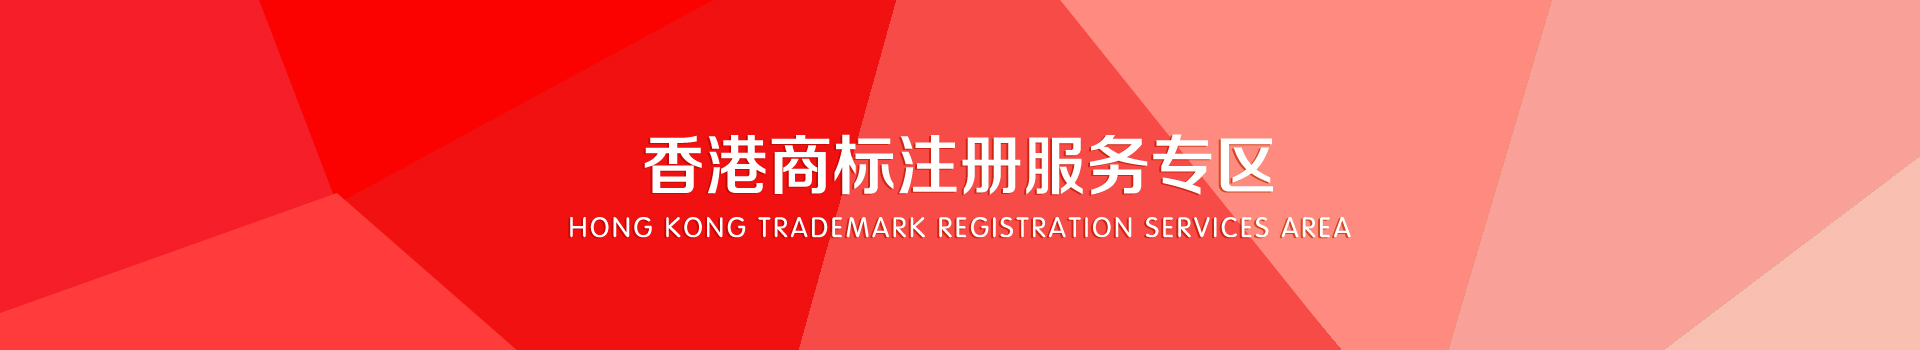 香港商标注册服务